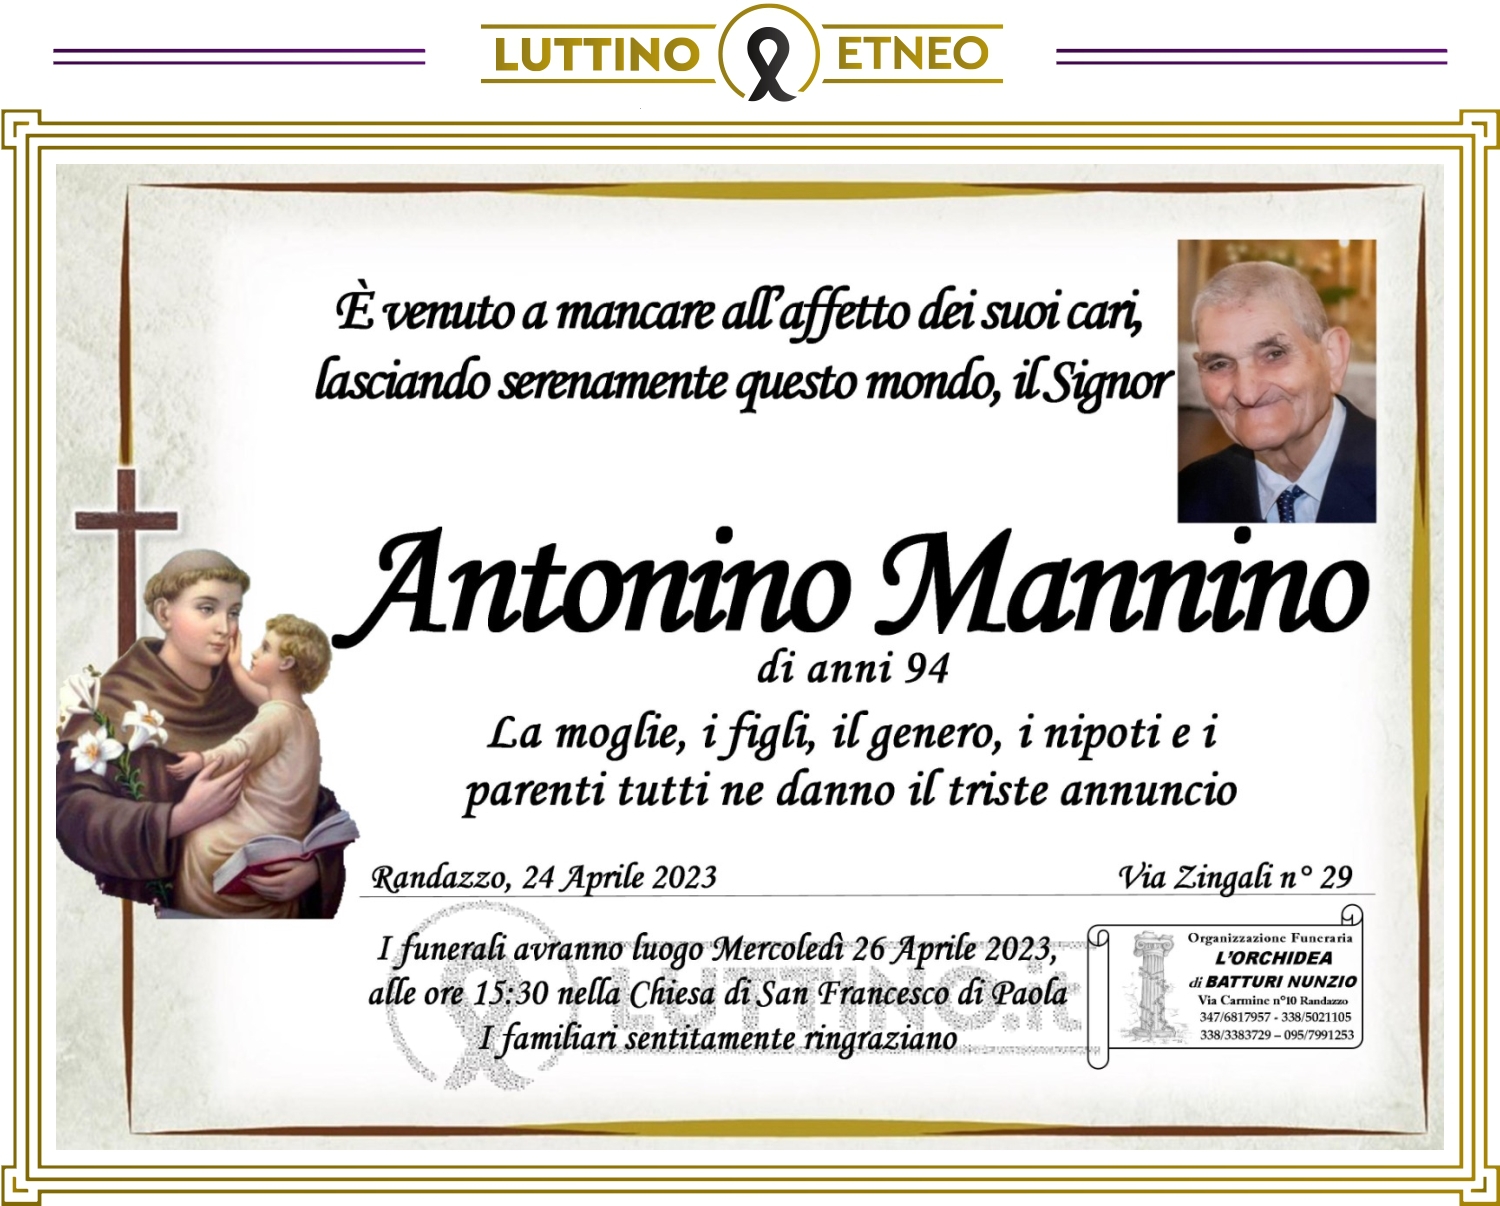 Antonino Mannino